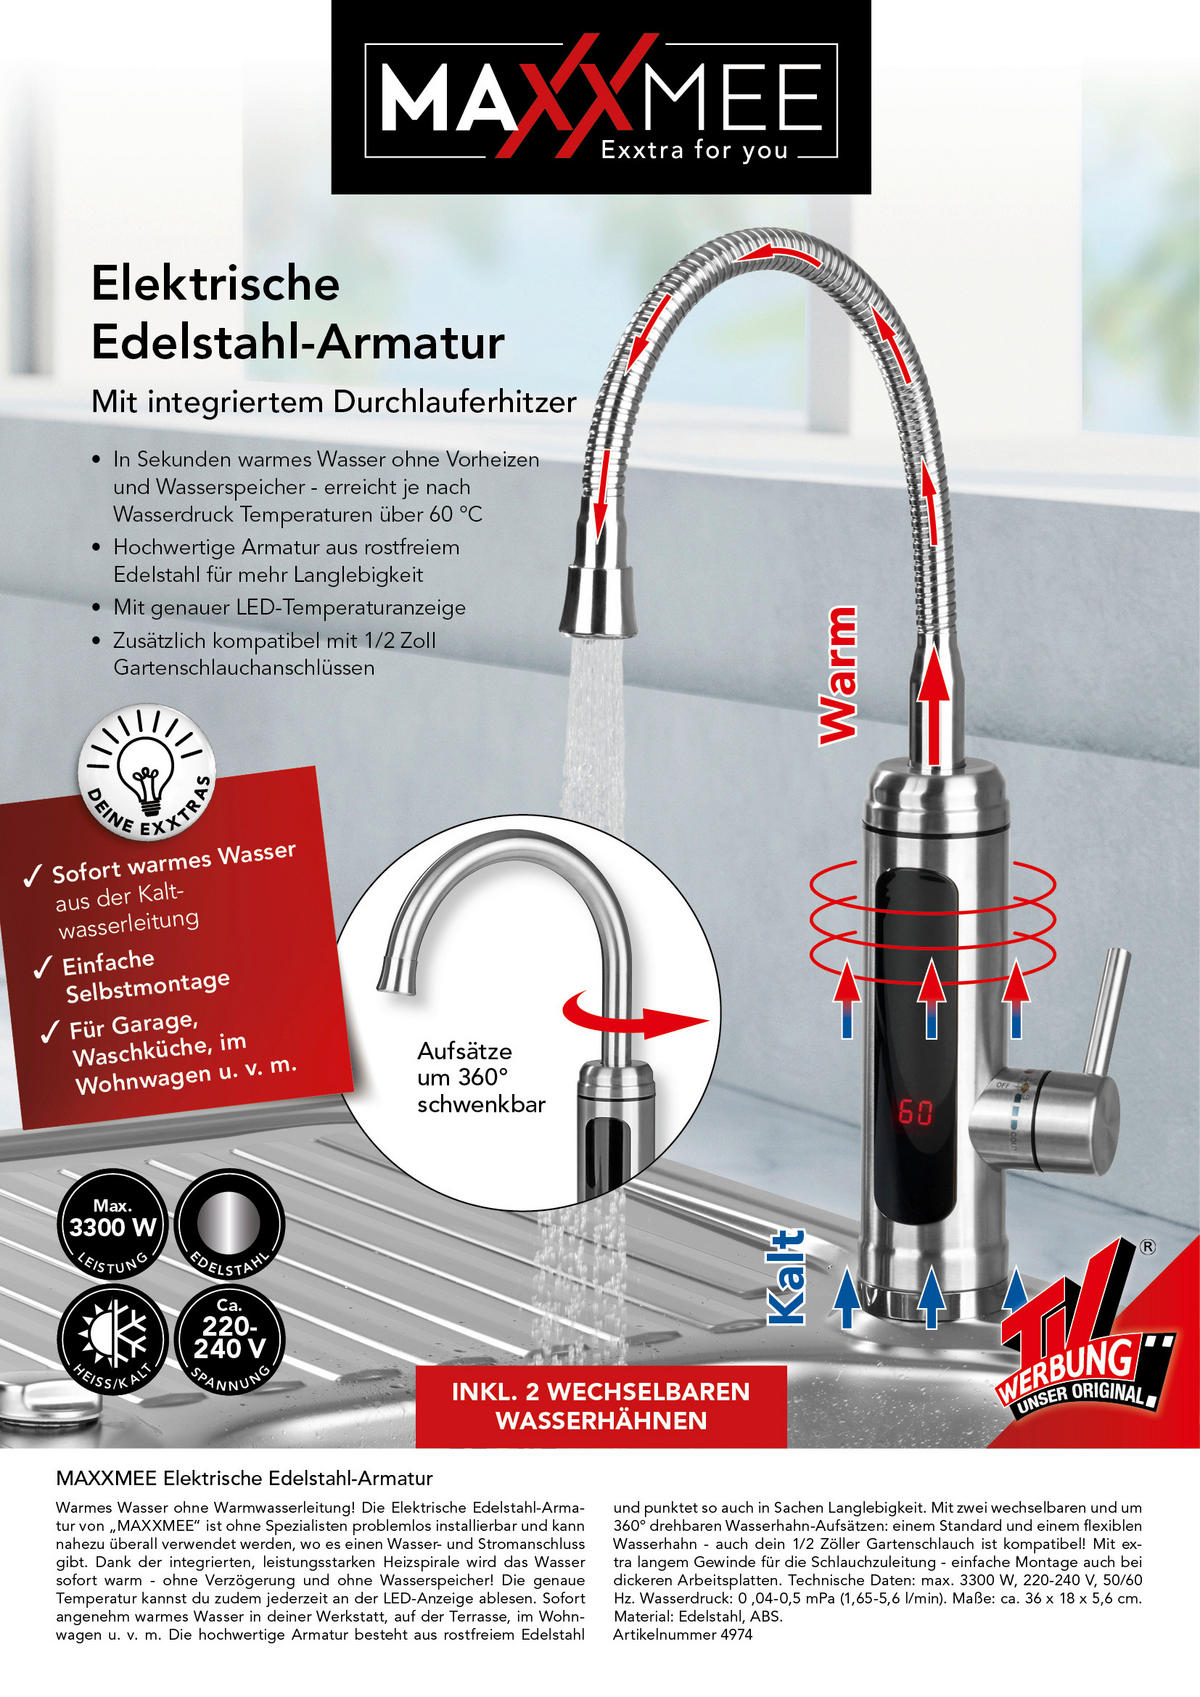 Elektrische Edelstahl-Armatur & Durchlauferhitzer